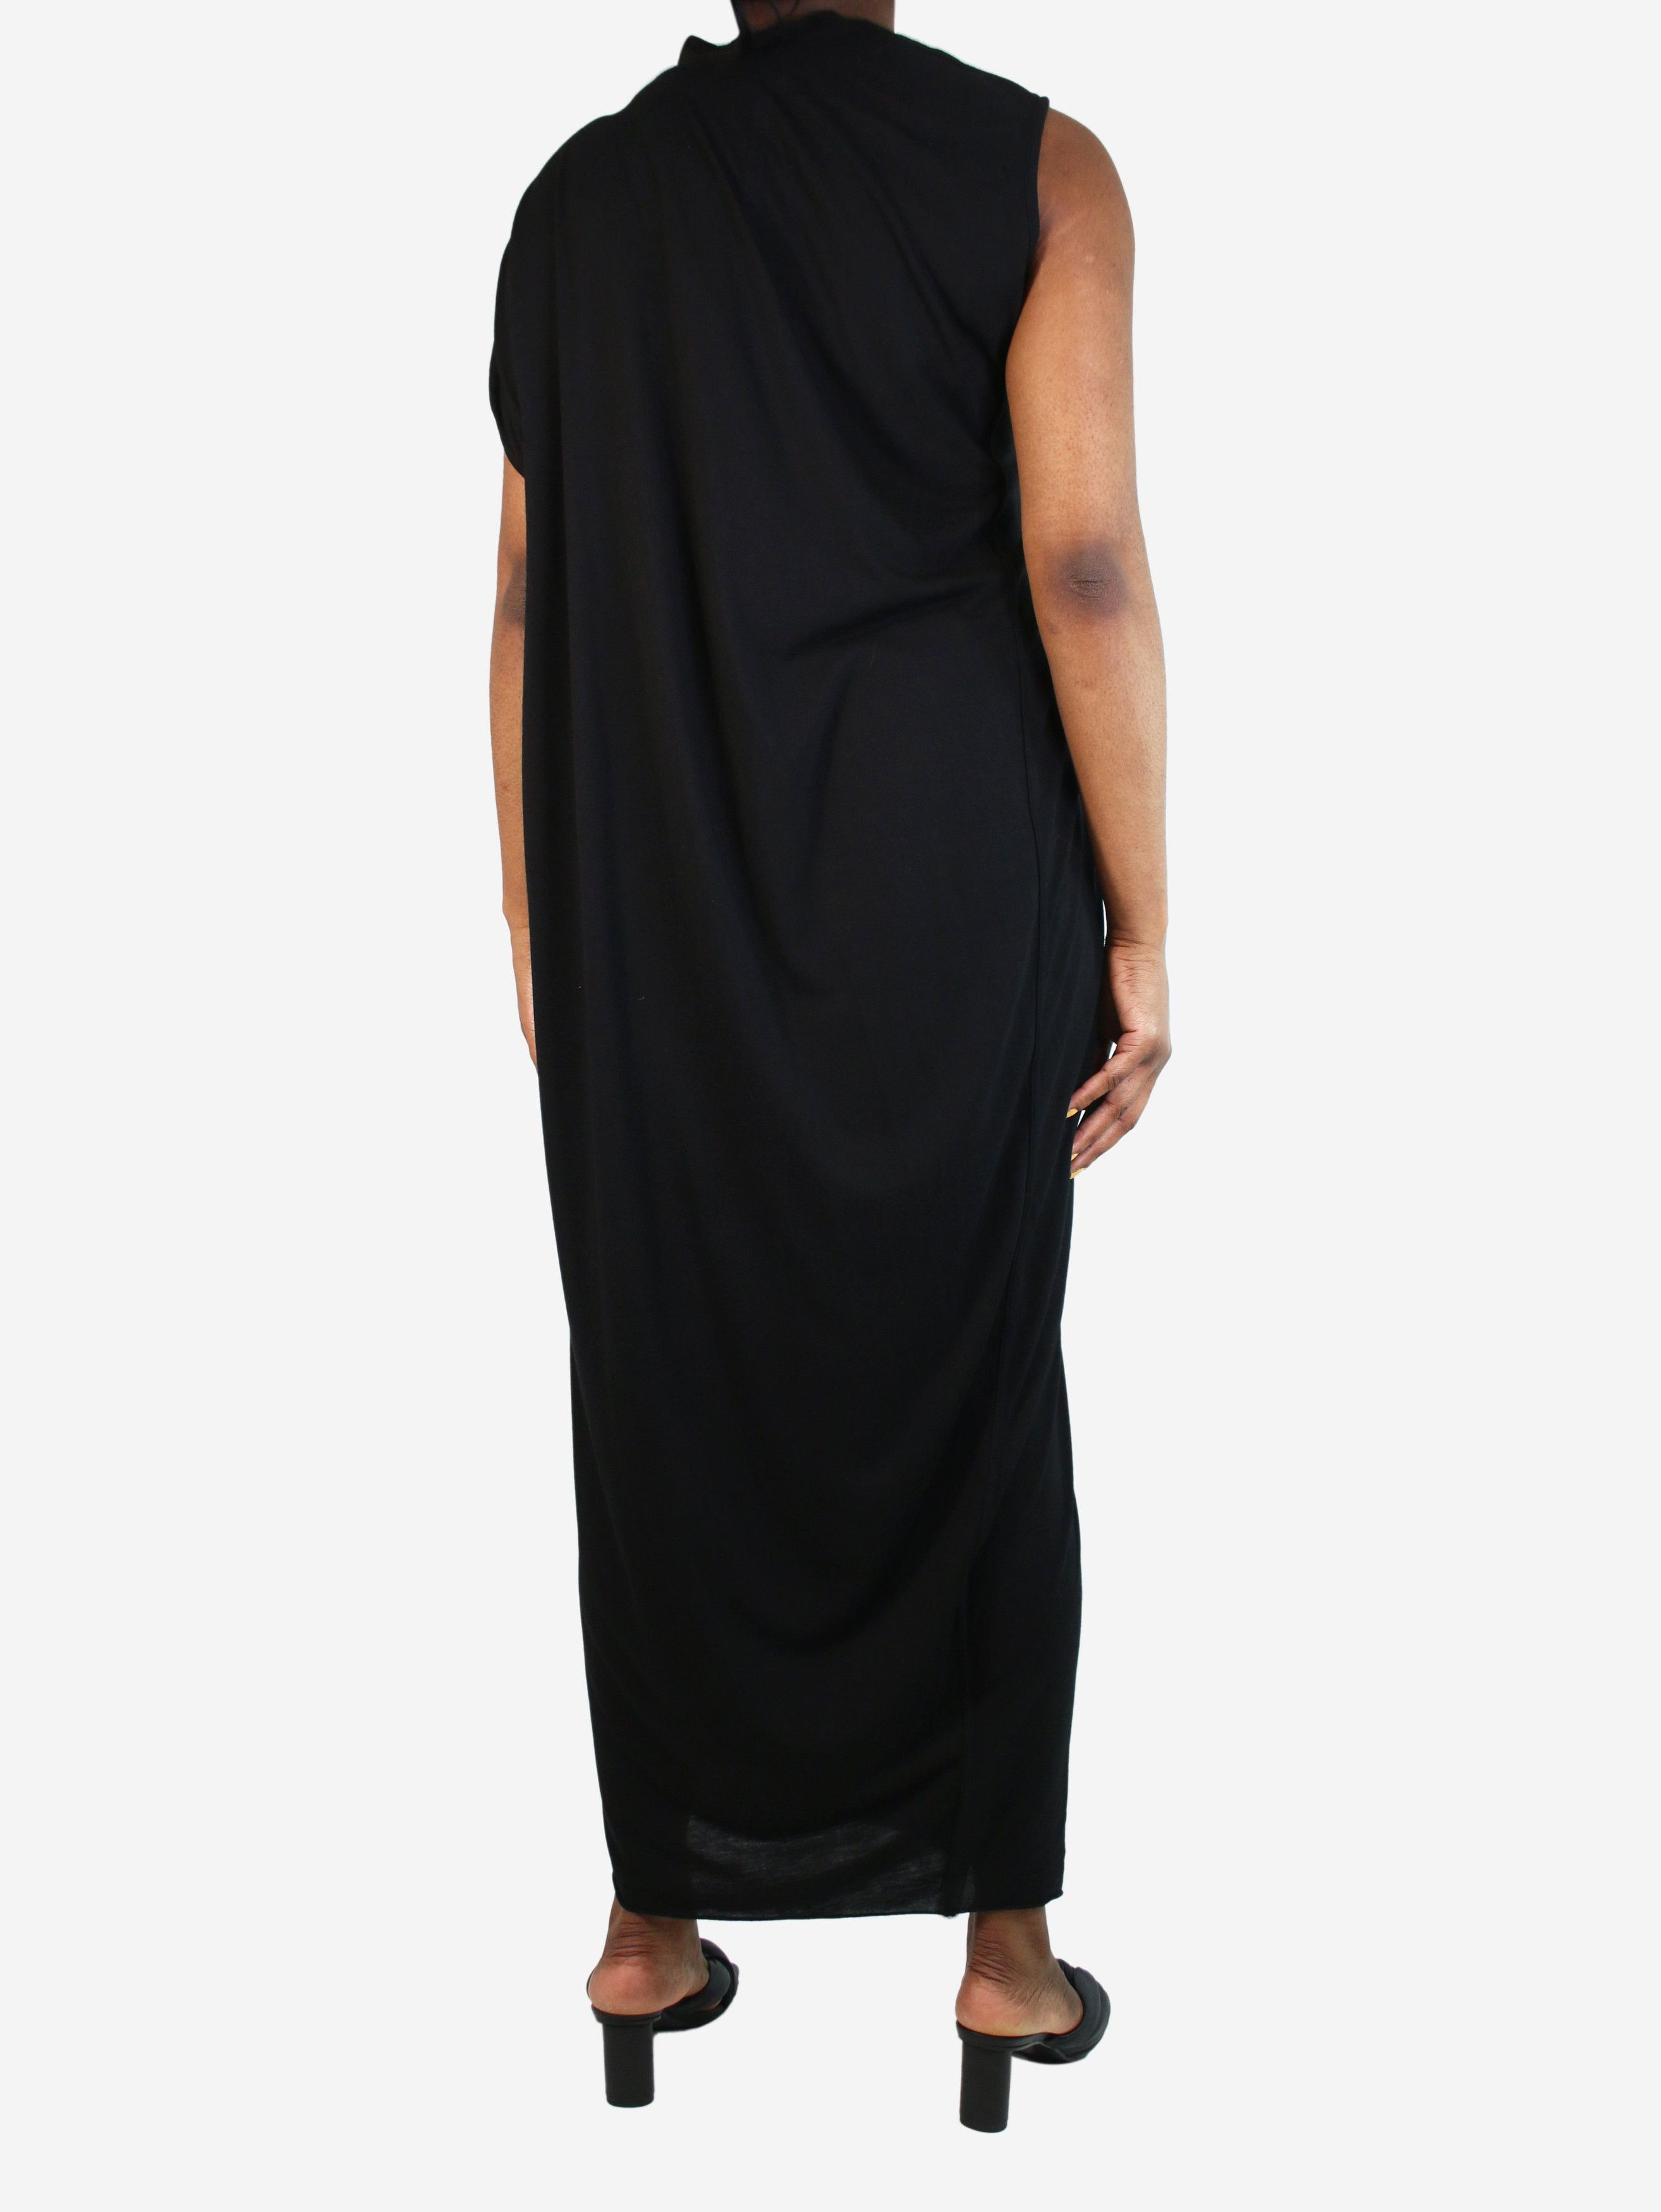 Rick Owens Black one-shoulder maxi dress - size UK 14 Size L / US 10 / IT 46 - 2 Preview